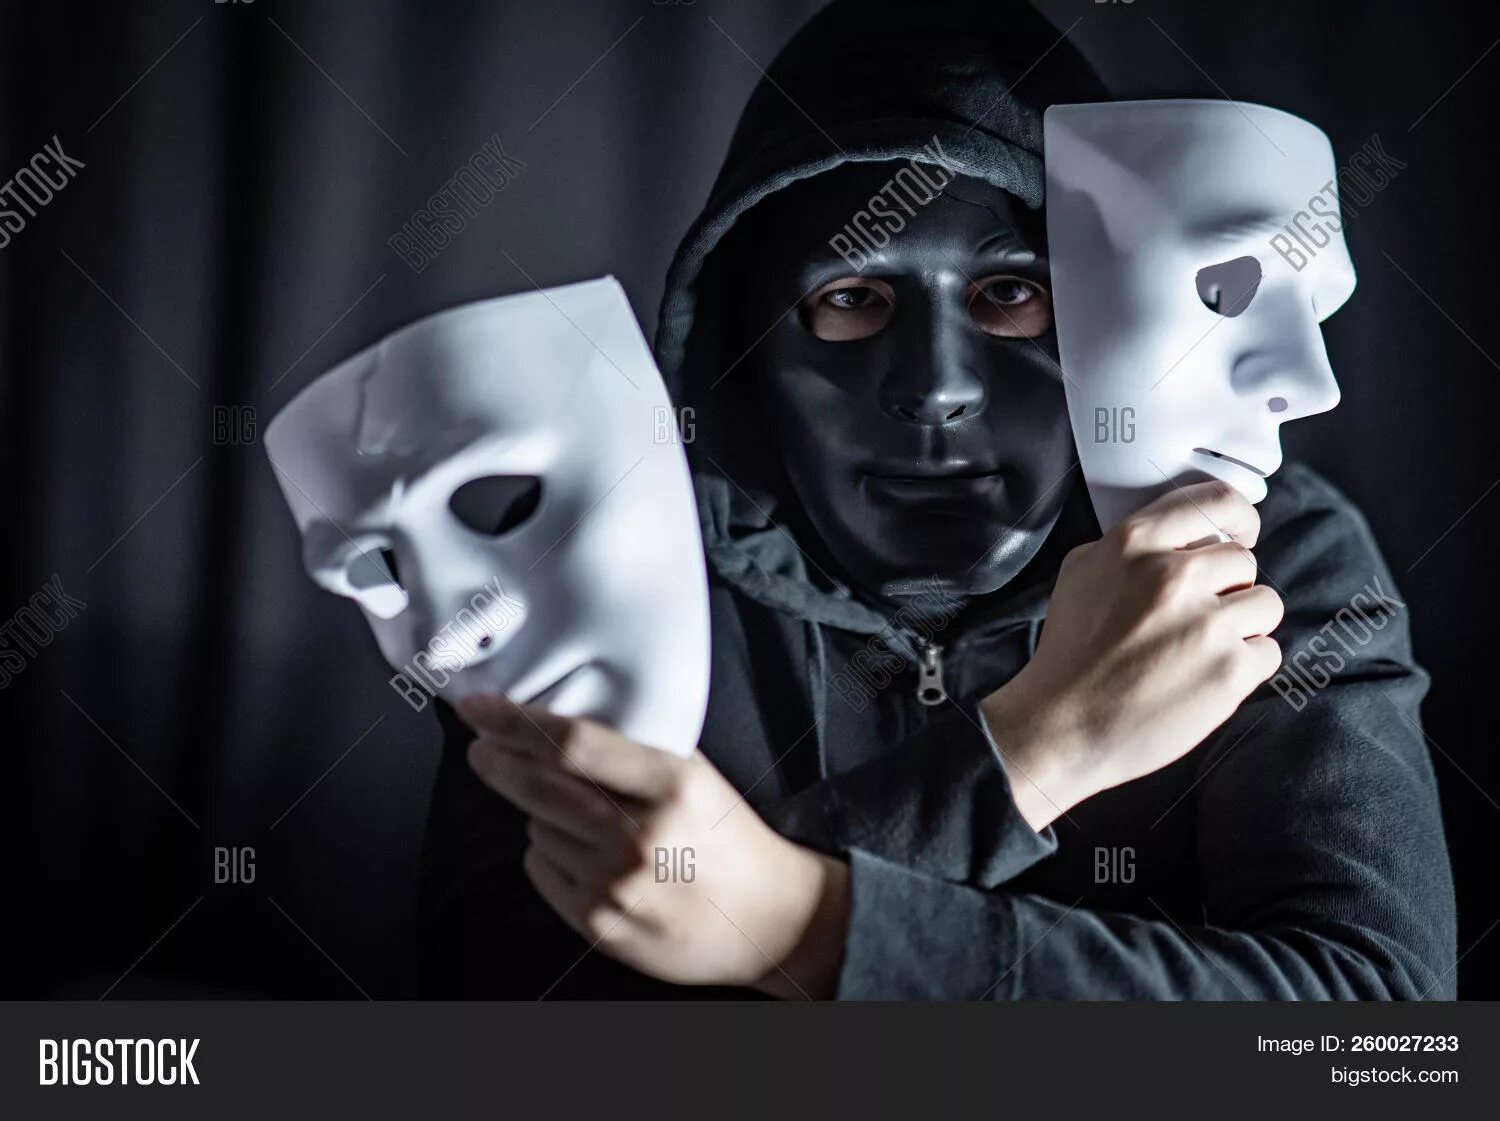 Человек в маске устраивает изощренные. Человек в маске. Человек надевает маску. Человек в театральной маске. Человек в белой маске.